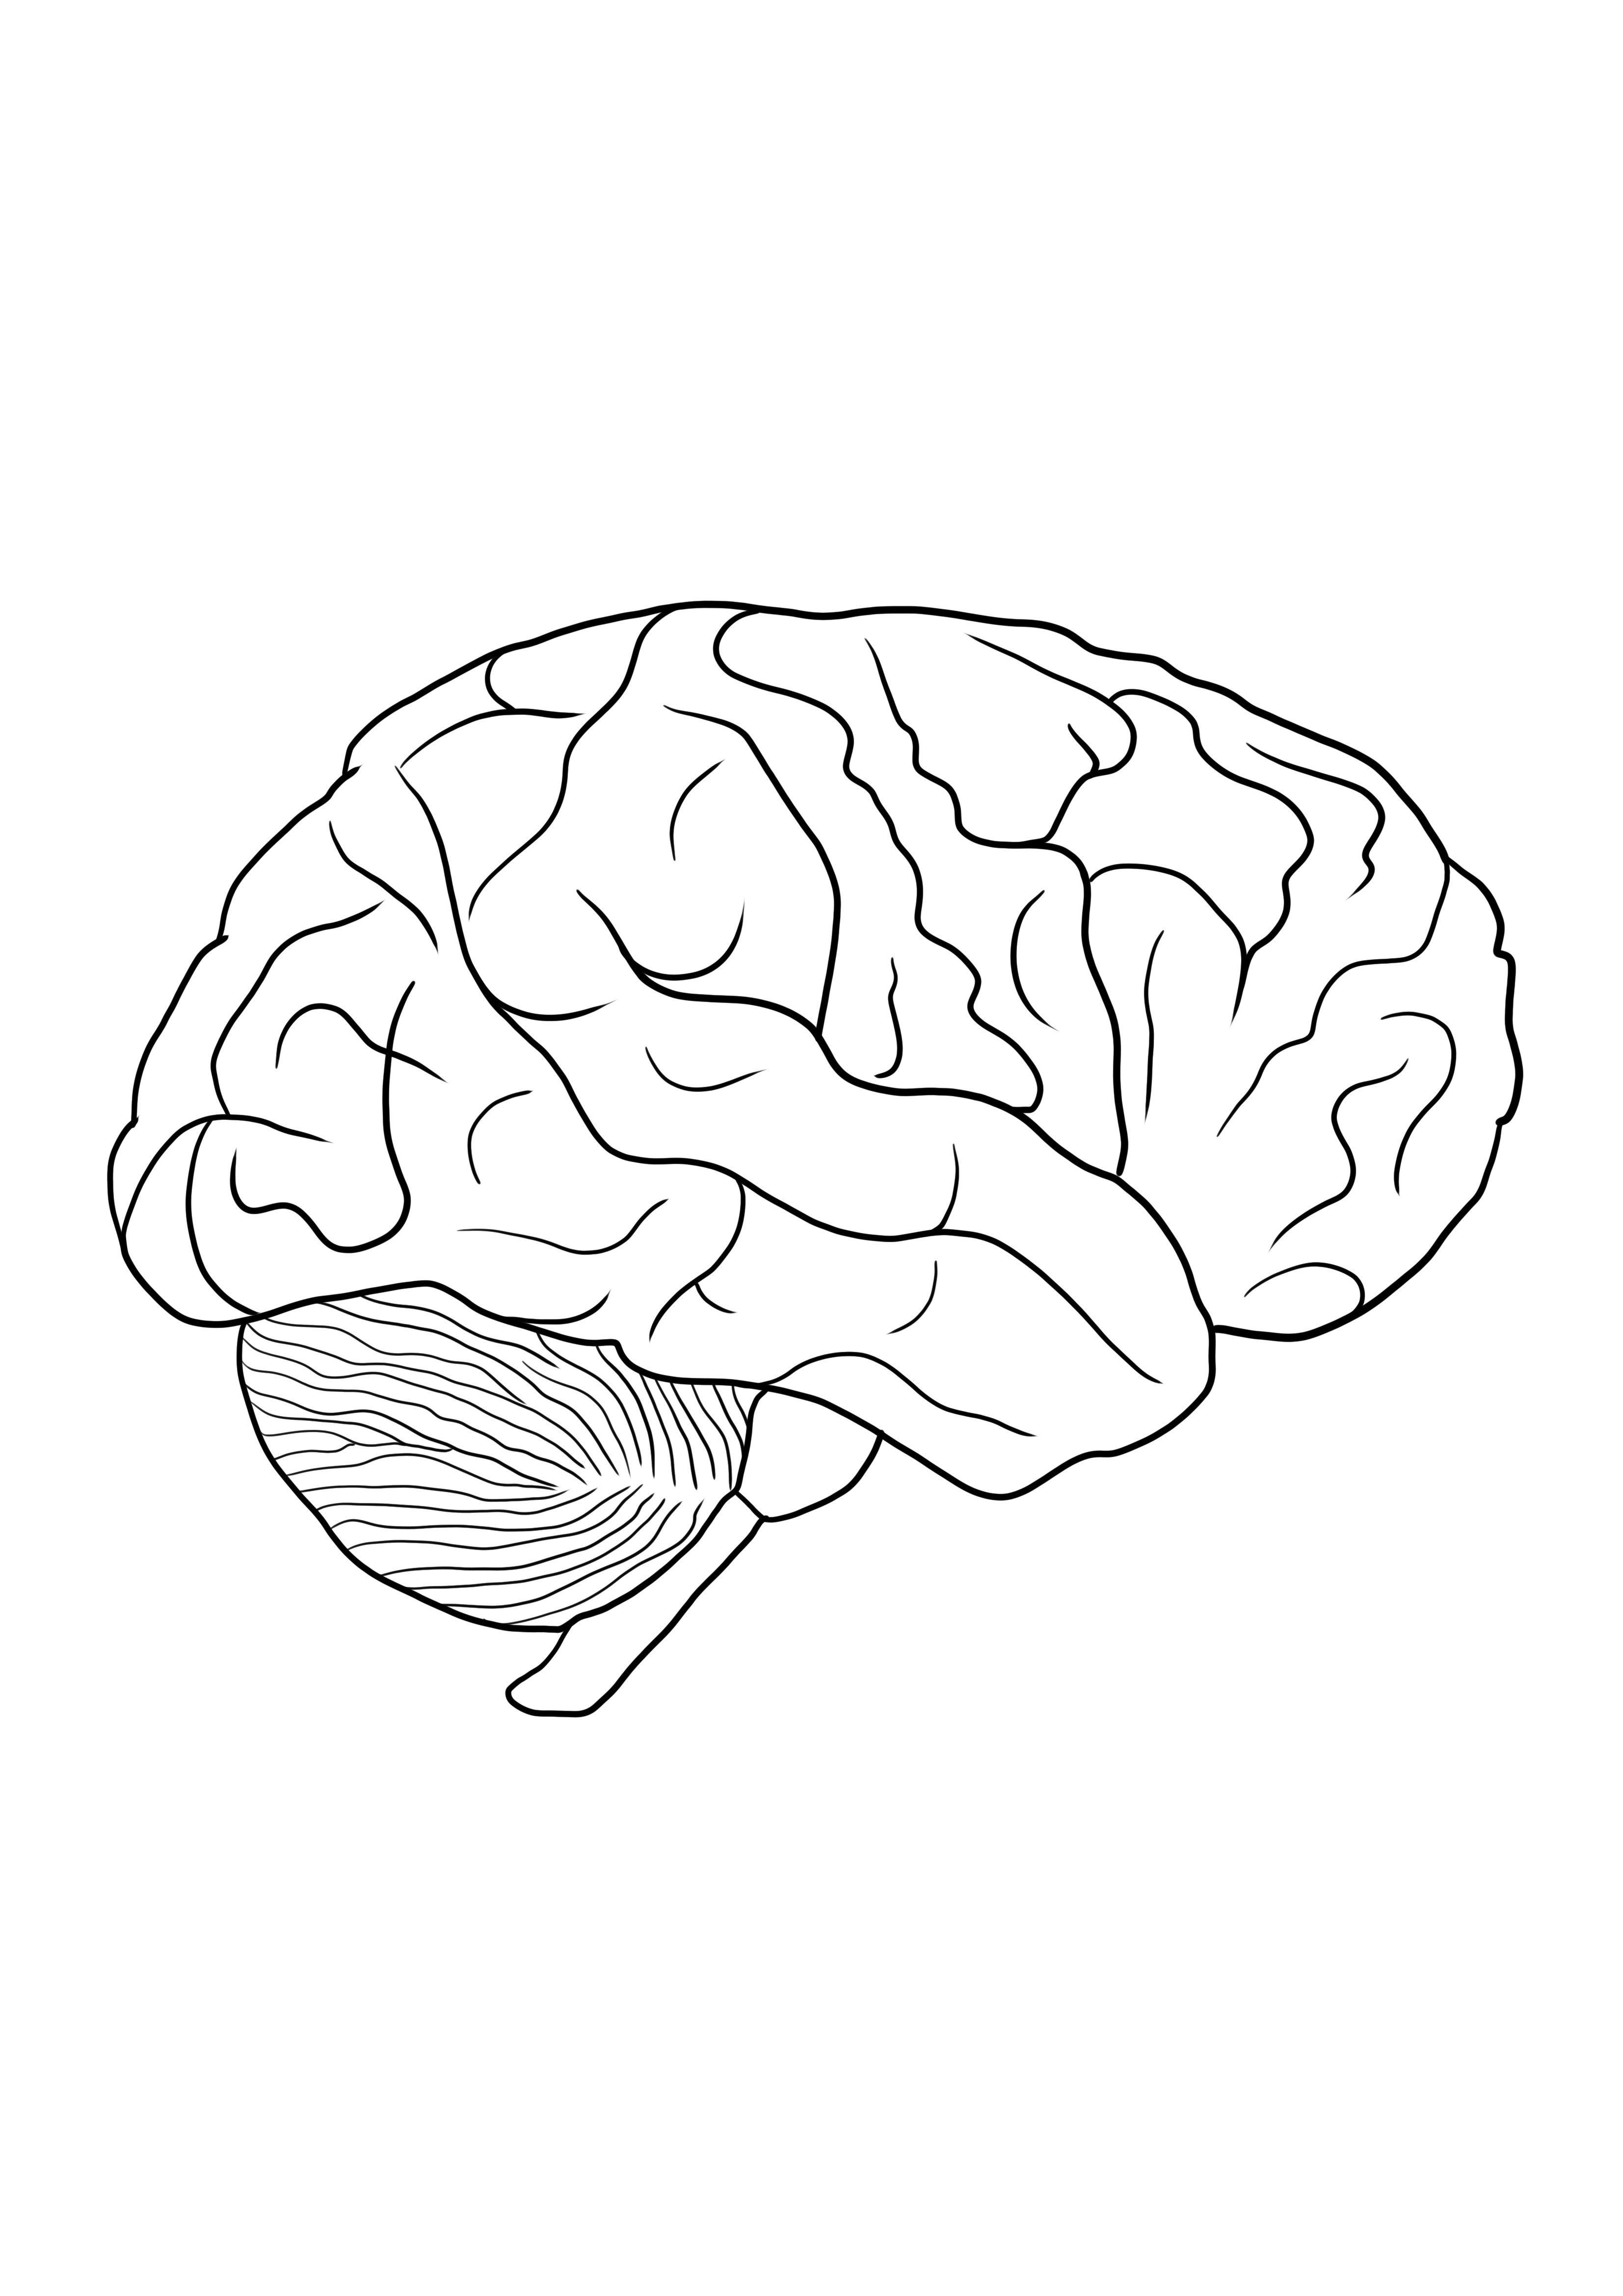 Imagen para colorear de cerebro humano para descargar gratis